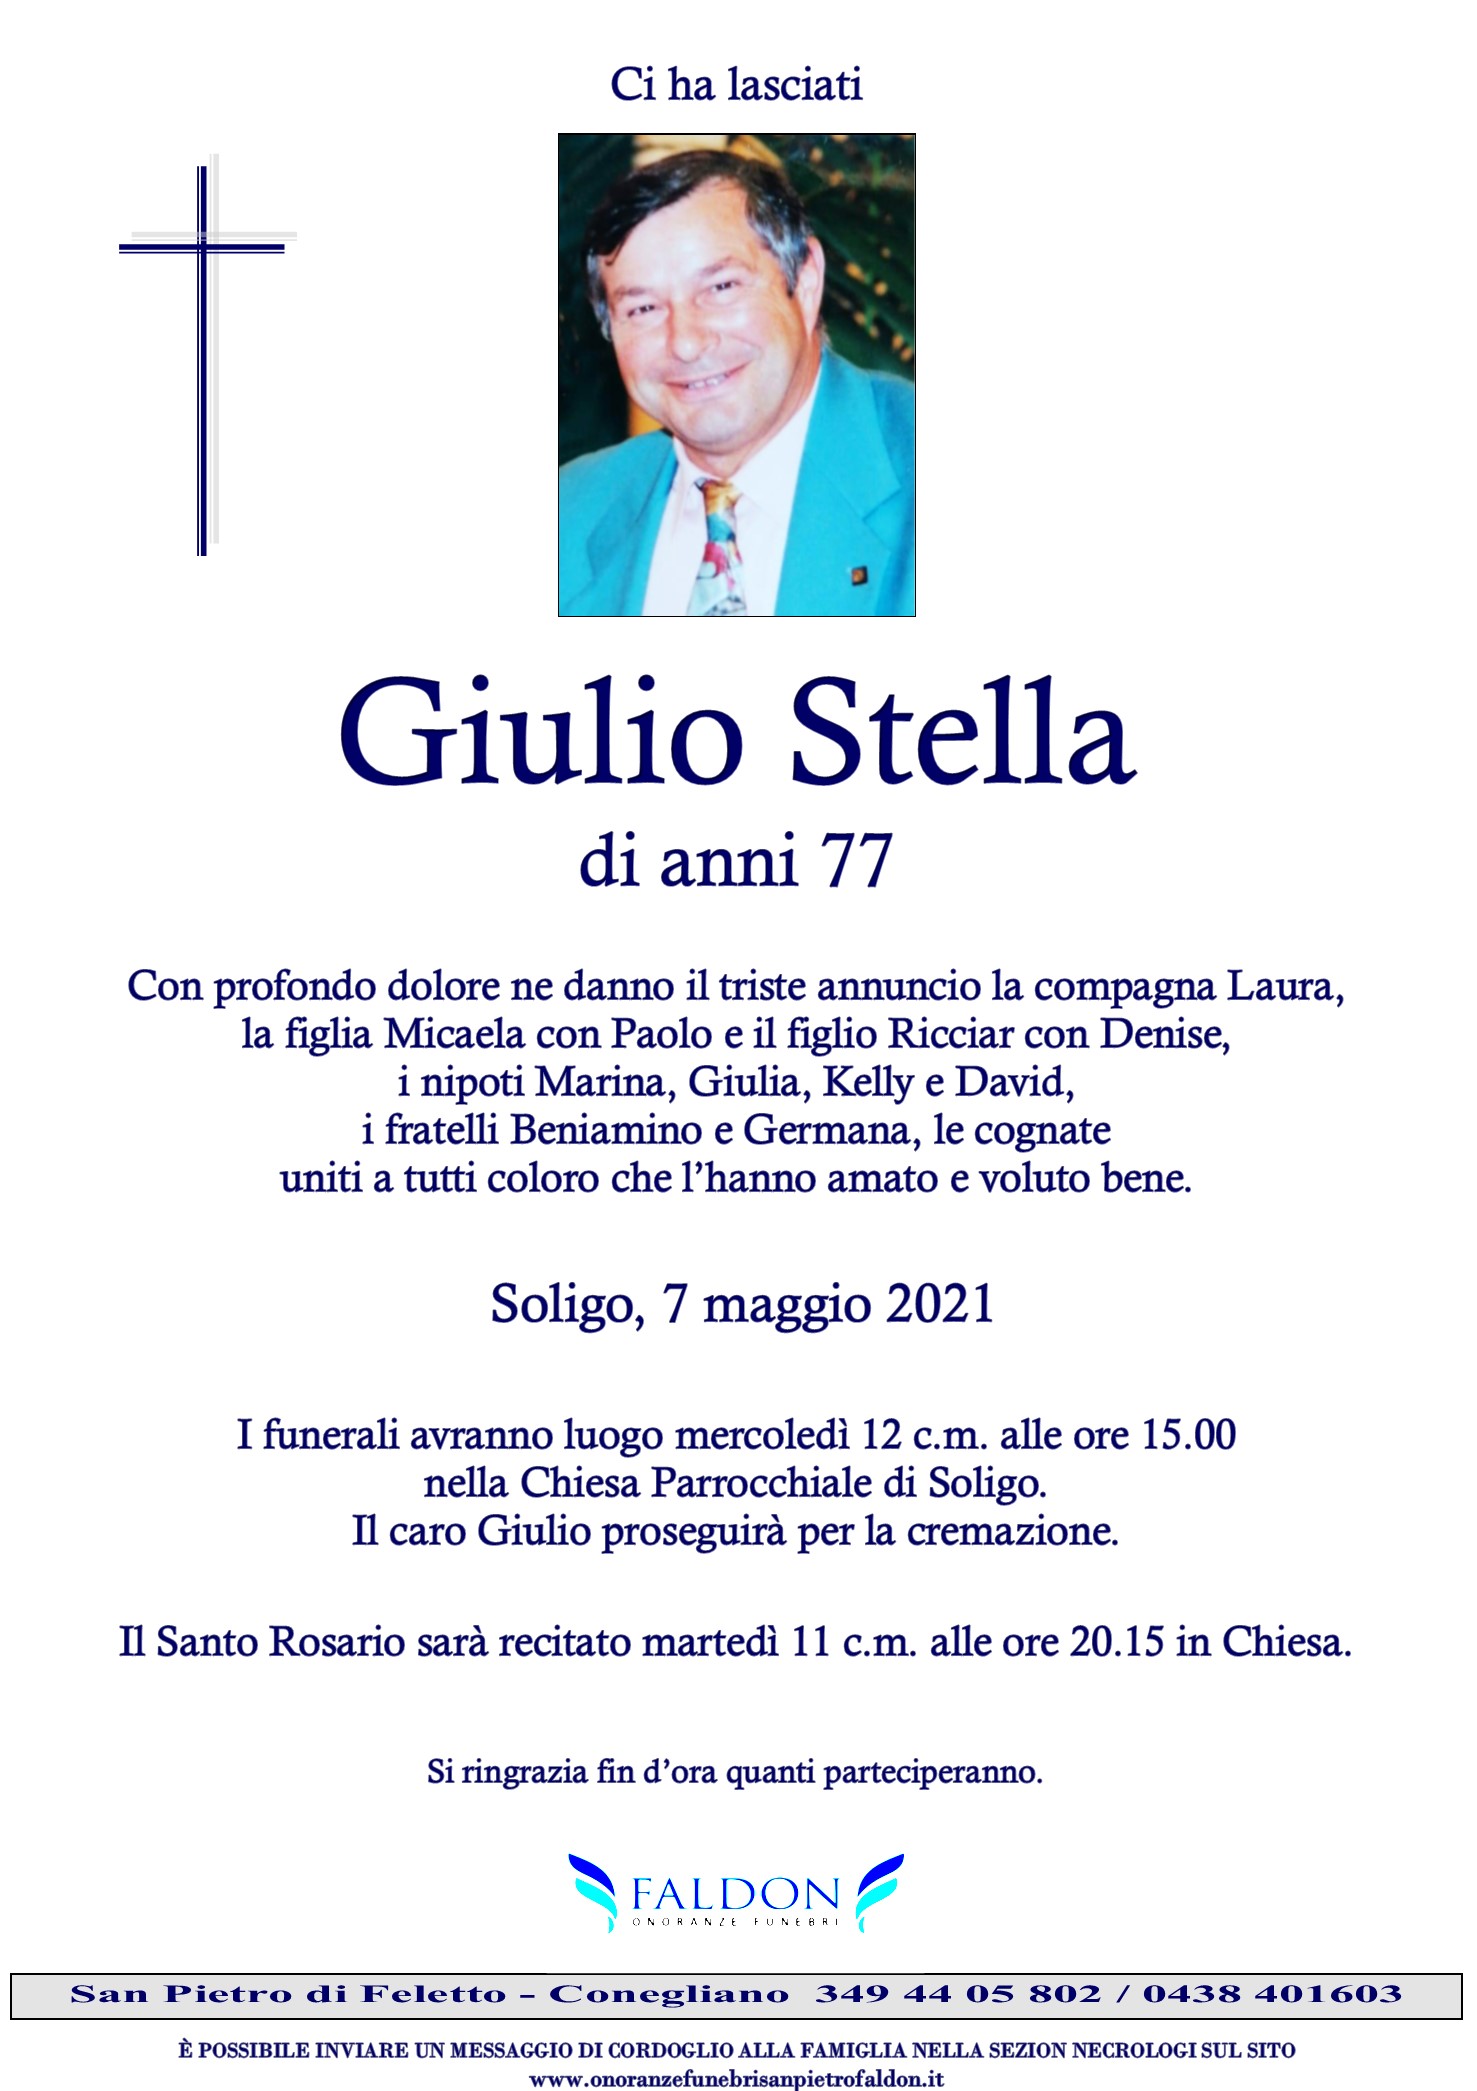 Giulio Stella